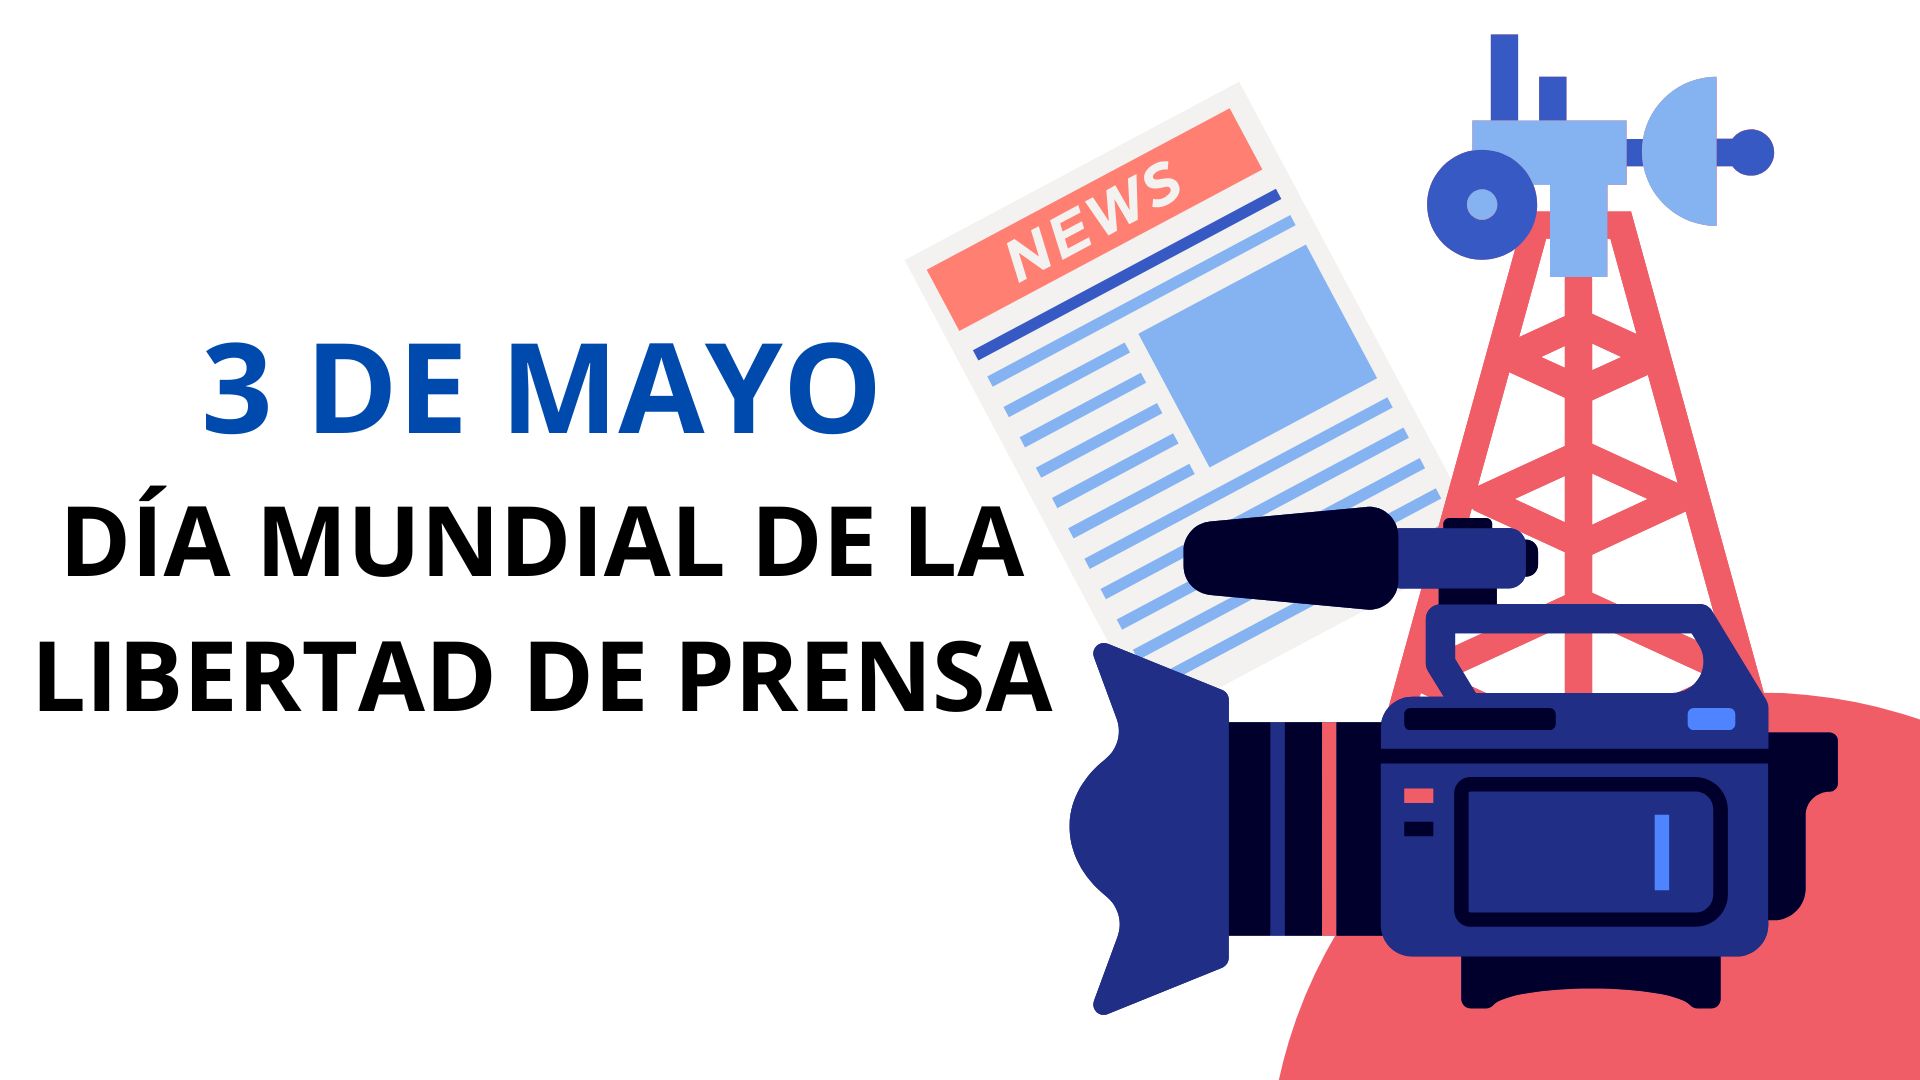 3 de mayo Día Mundial de la Libertad de Prensa